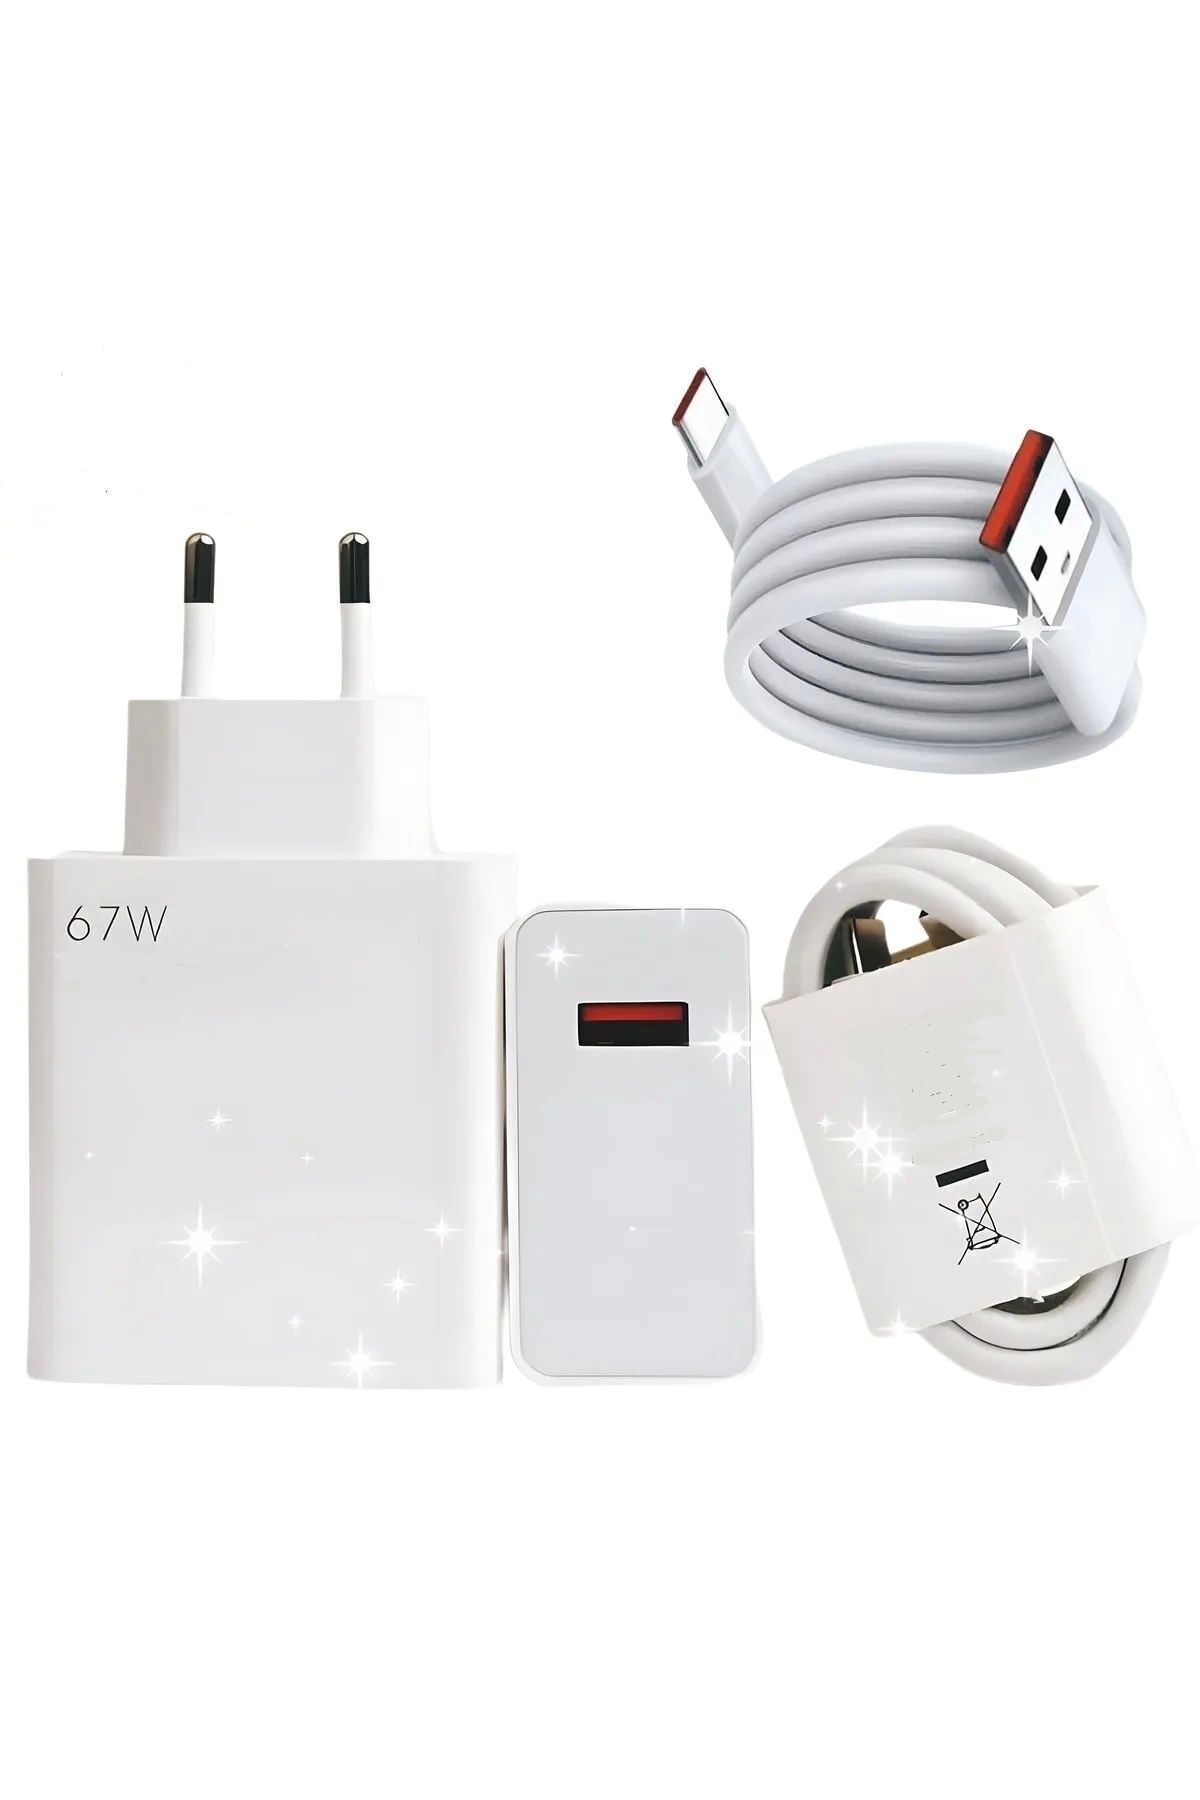 Genel Markalar Type-c 67w (WATT) Ultra Hızlı Şarj Aleti Adaptör Kablo Set